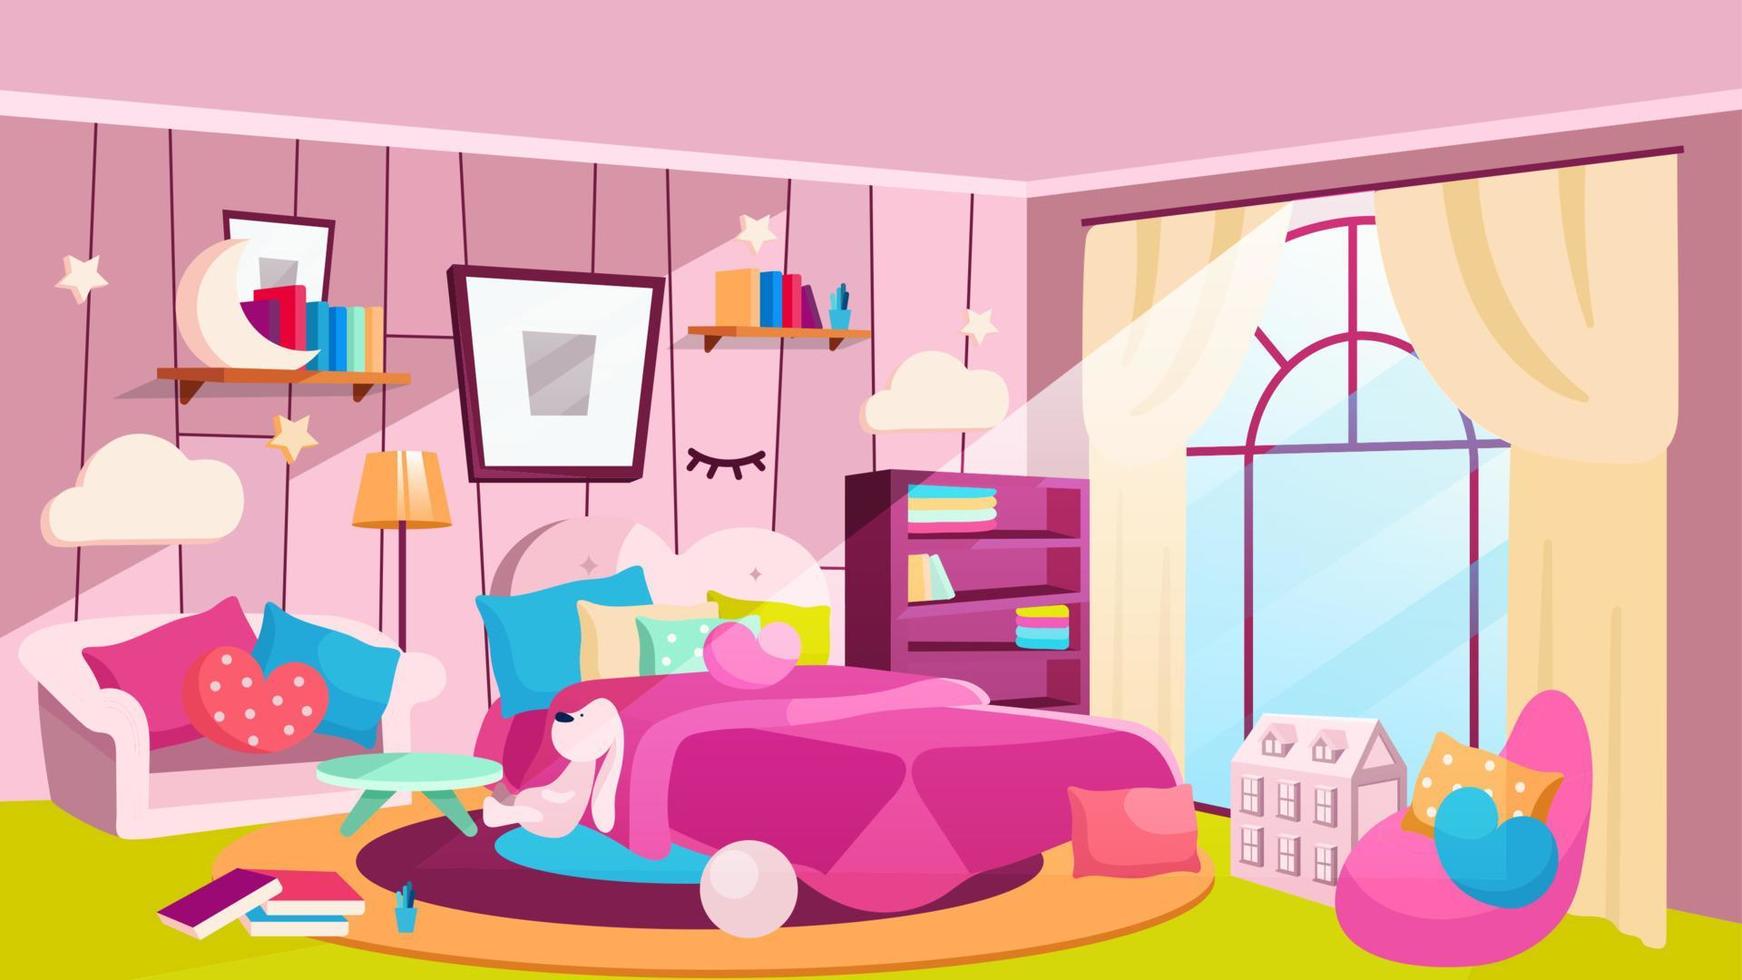 flickor sovrum på dagtid platt vektorillustration. rymligt rum med säng, bokhyllor, bild på vägg. flickaktig husinteriör med rosa soffa, fåtölj, filt. dekorativa molnformade lampor vektor